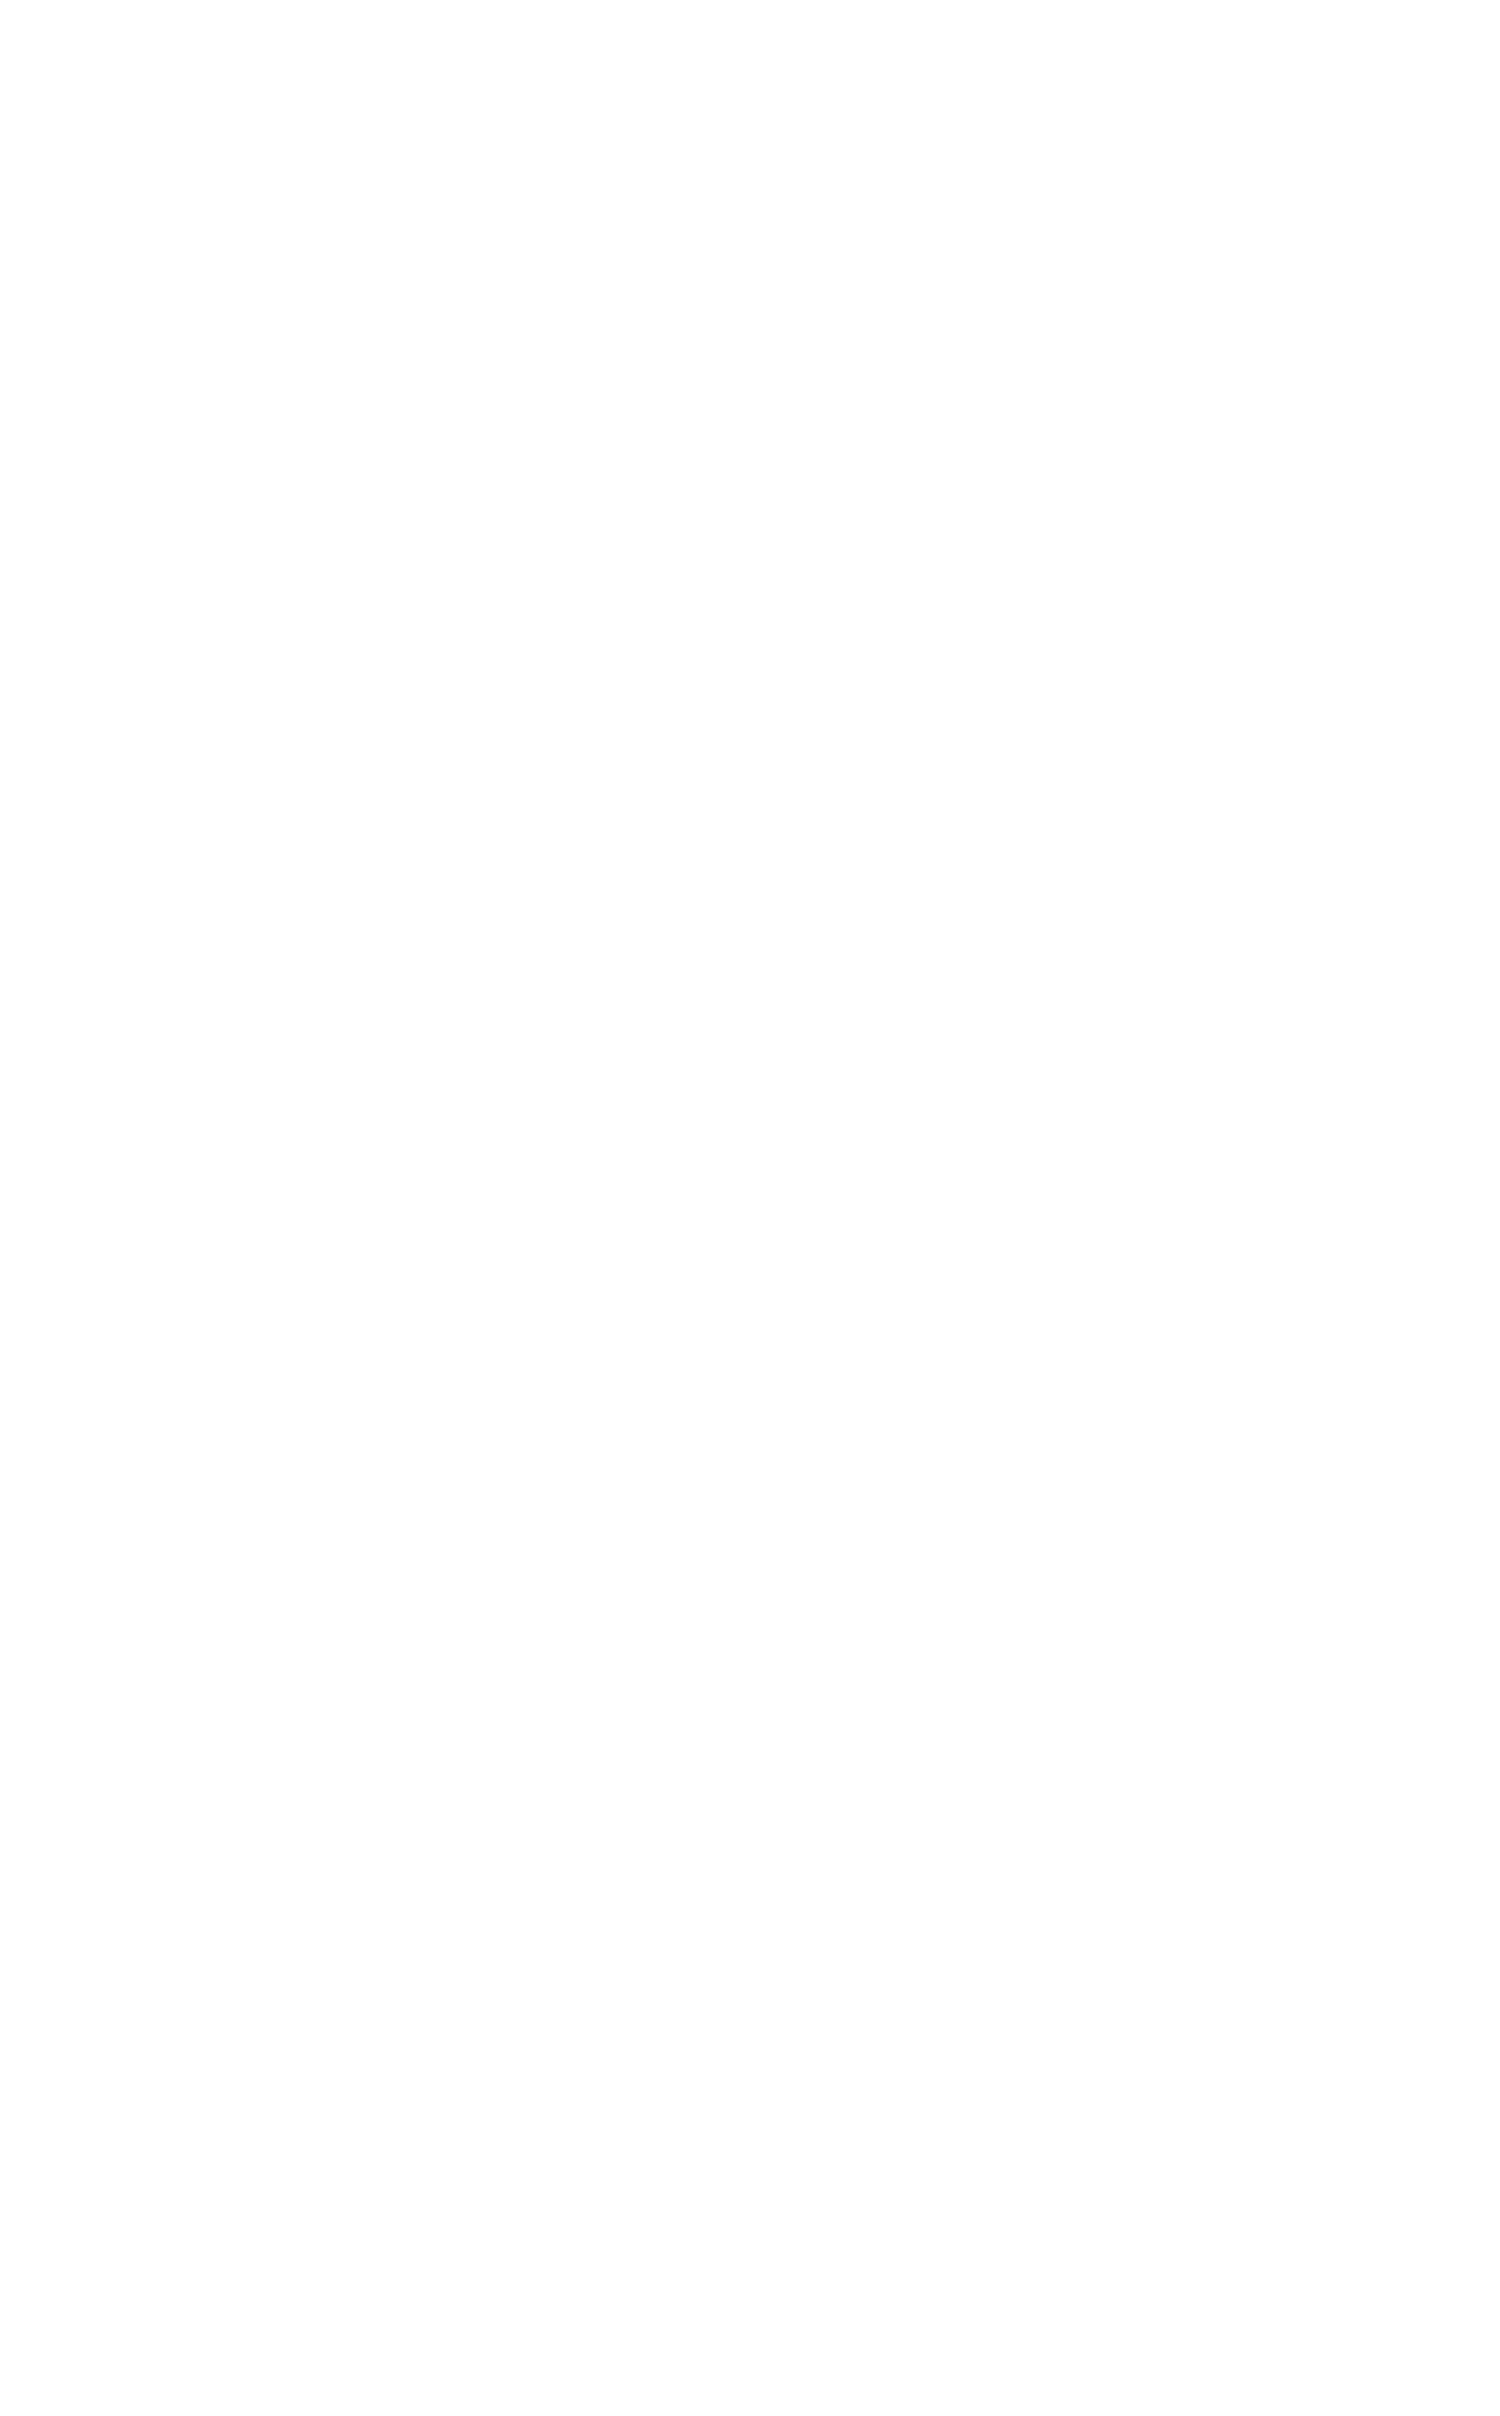 EAST GATE